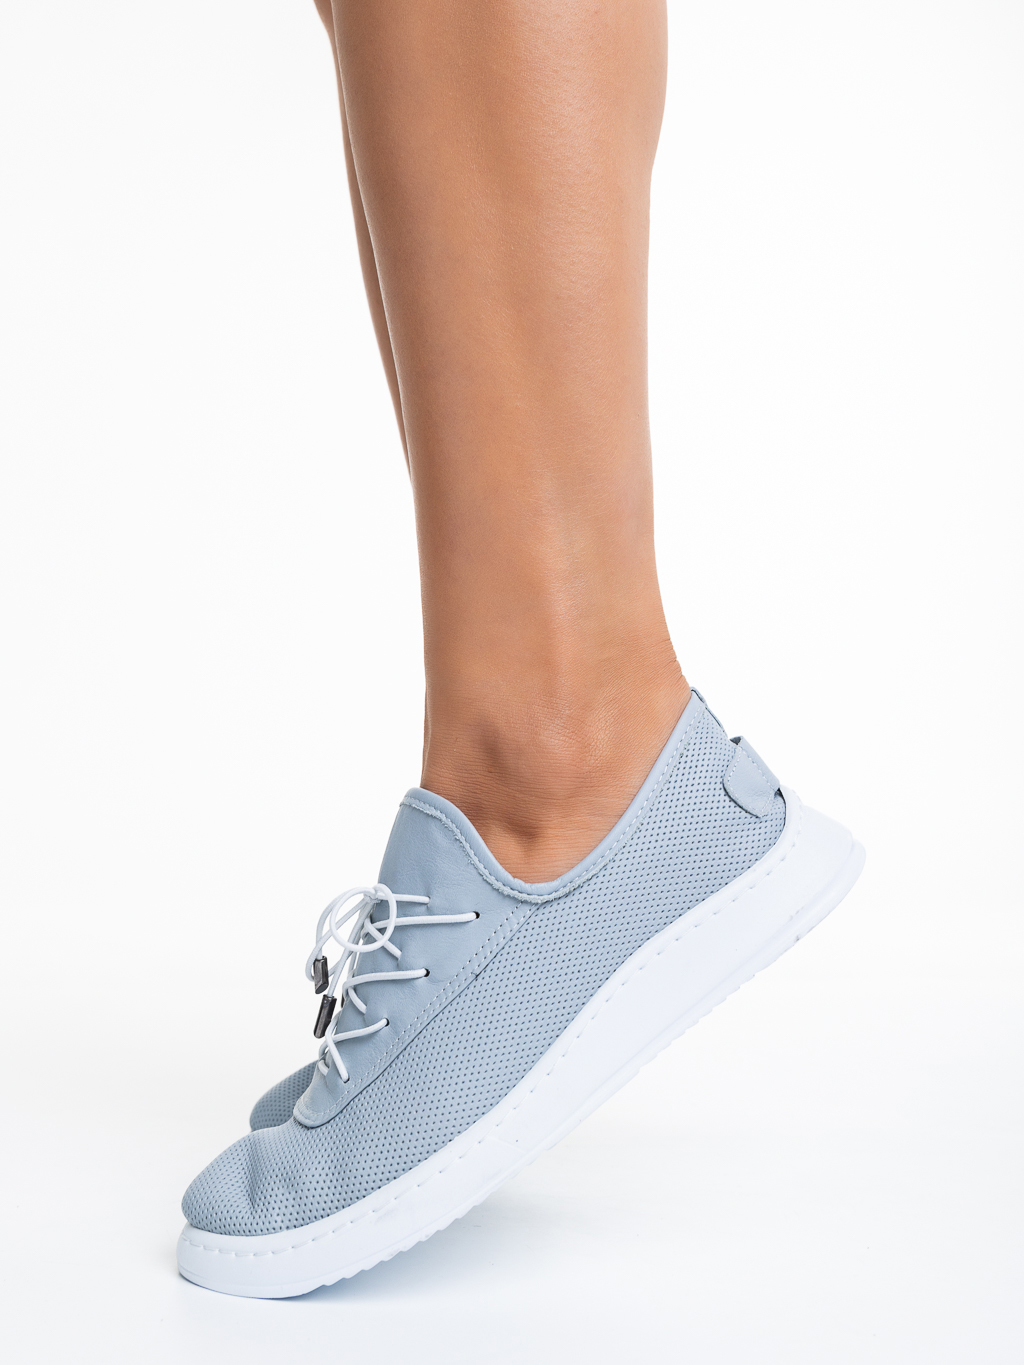 Nilda kék alkalmi női cipő, valódi bőrből készült, 3 - Kalapod.hu